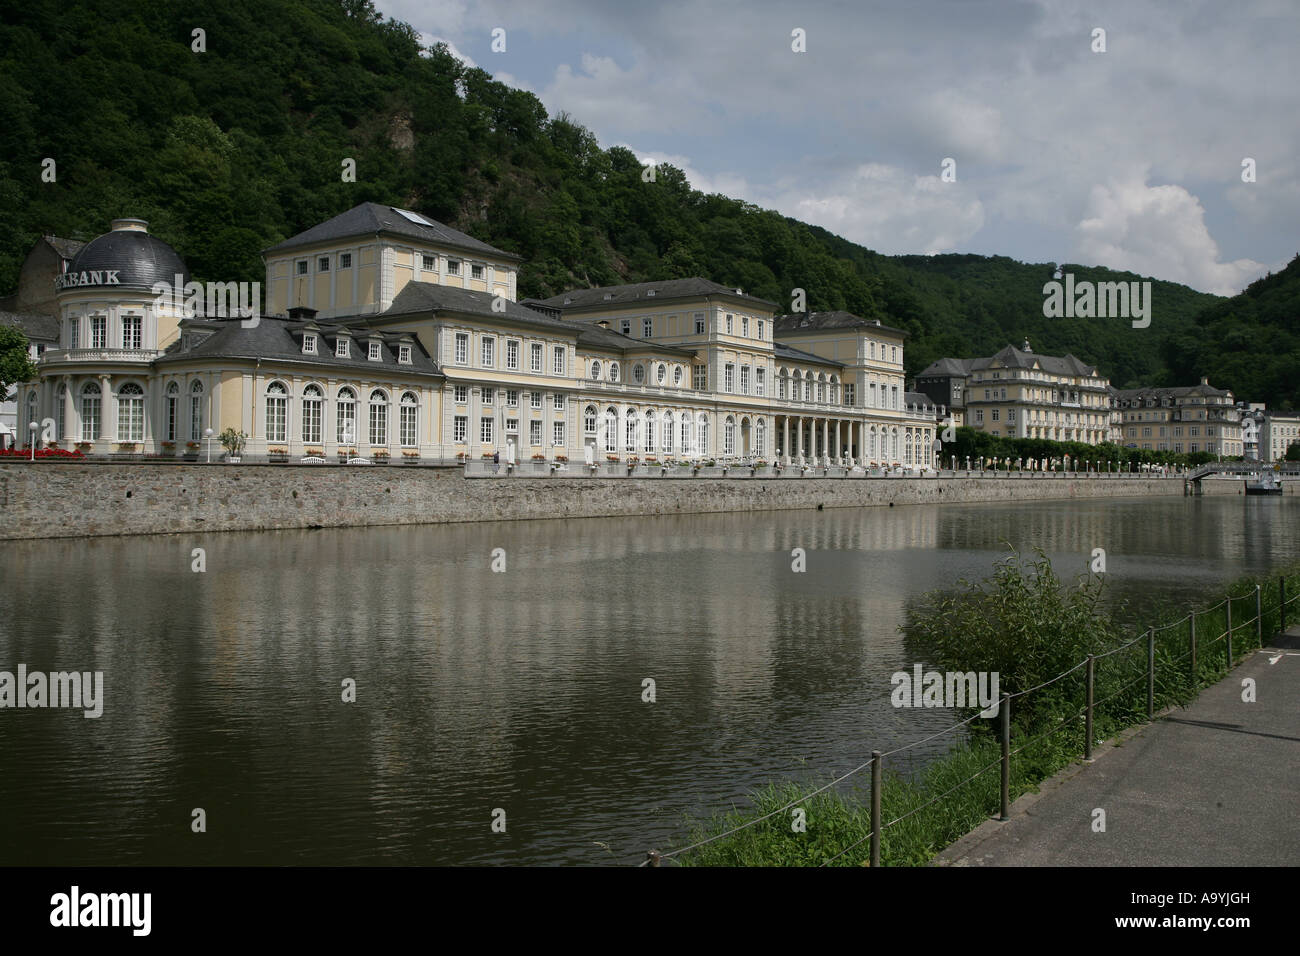 The Spa Hotel of Bad Ems Rhineland-Palatinate Germany Europe Stock Photo